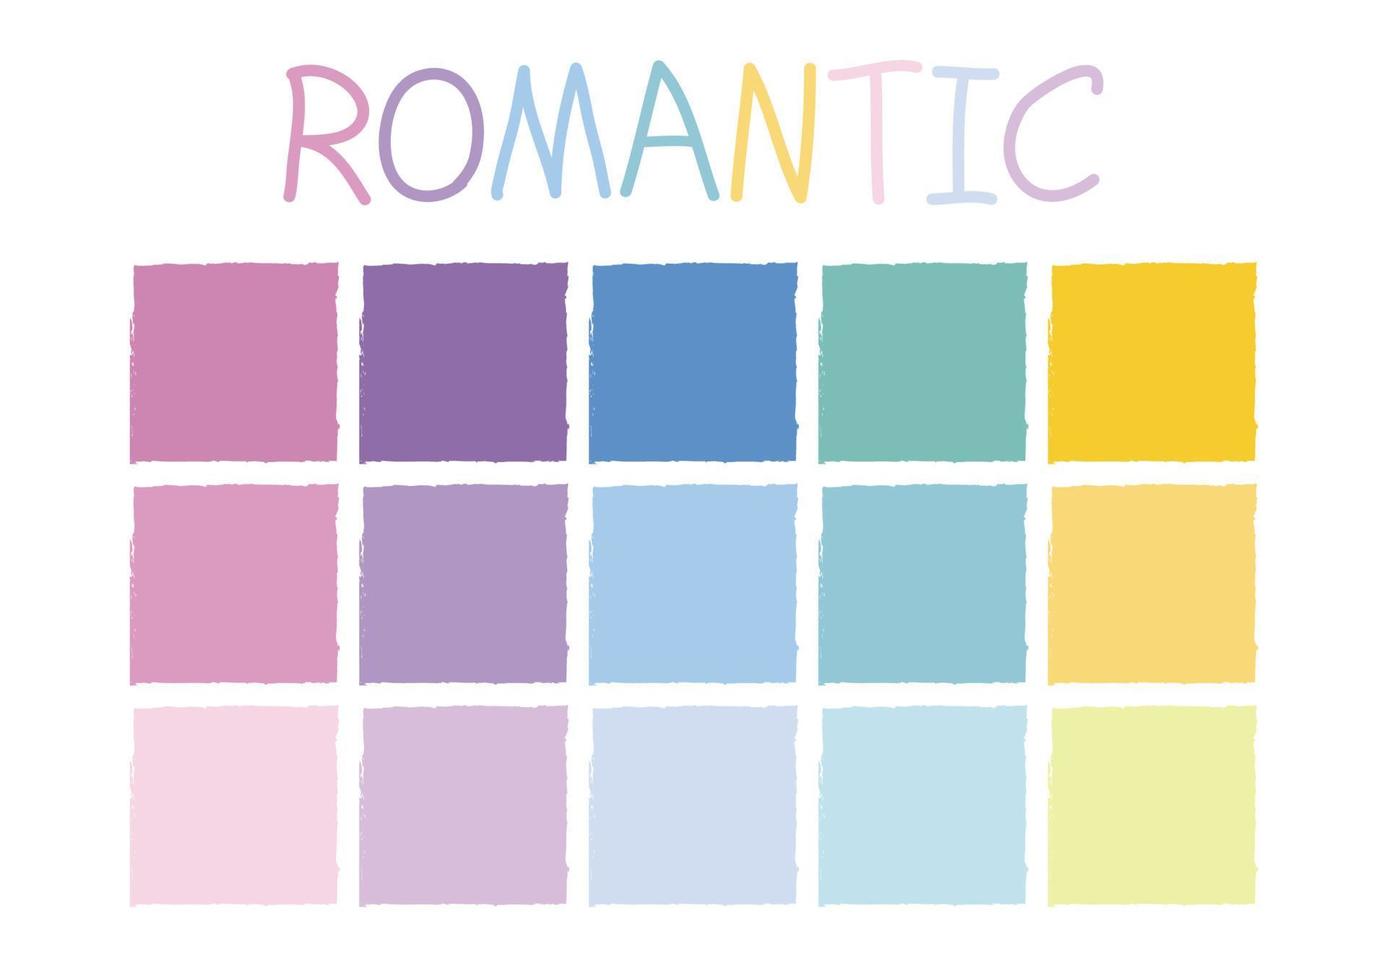 romantisk färgton vektor